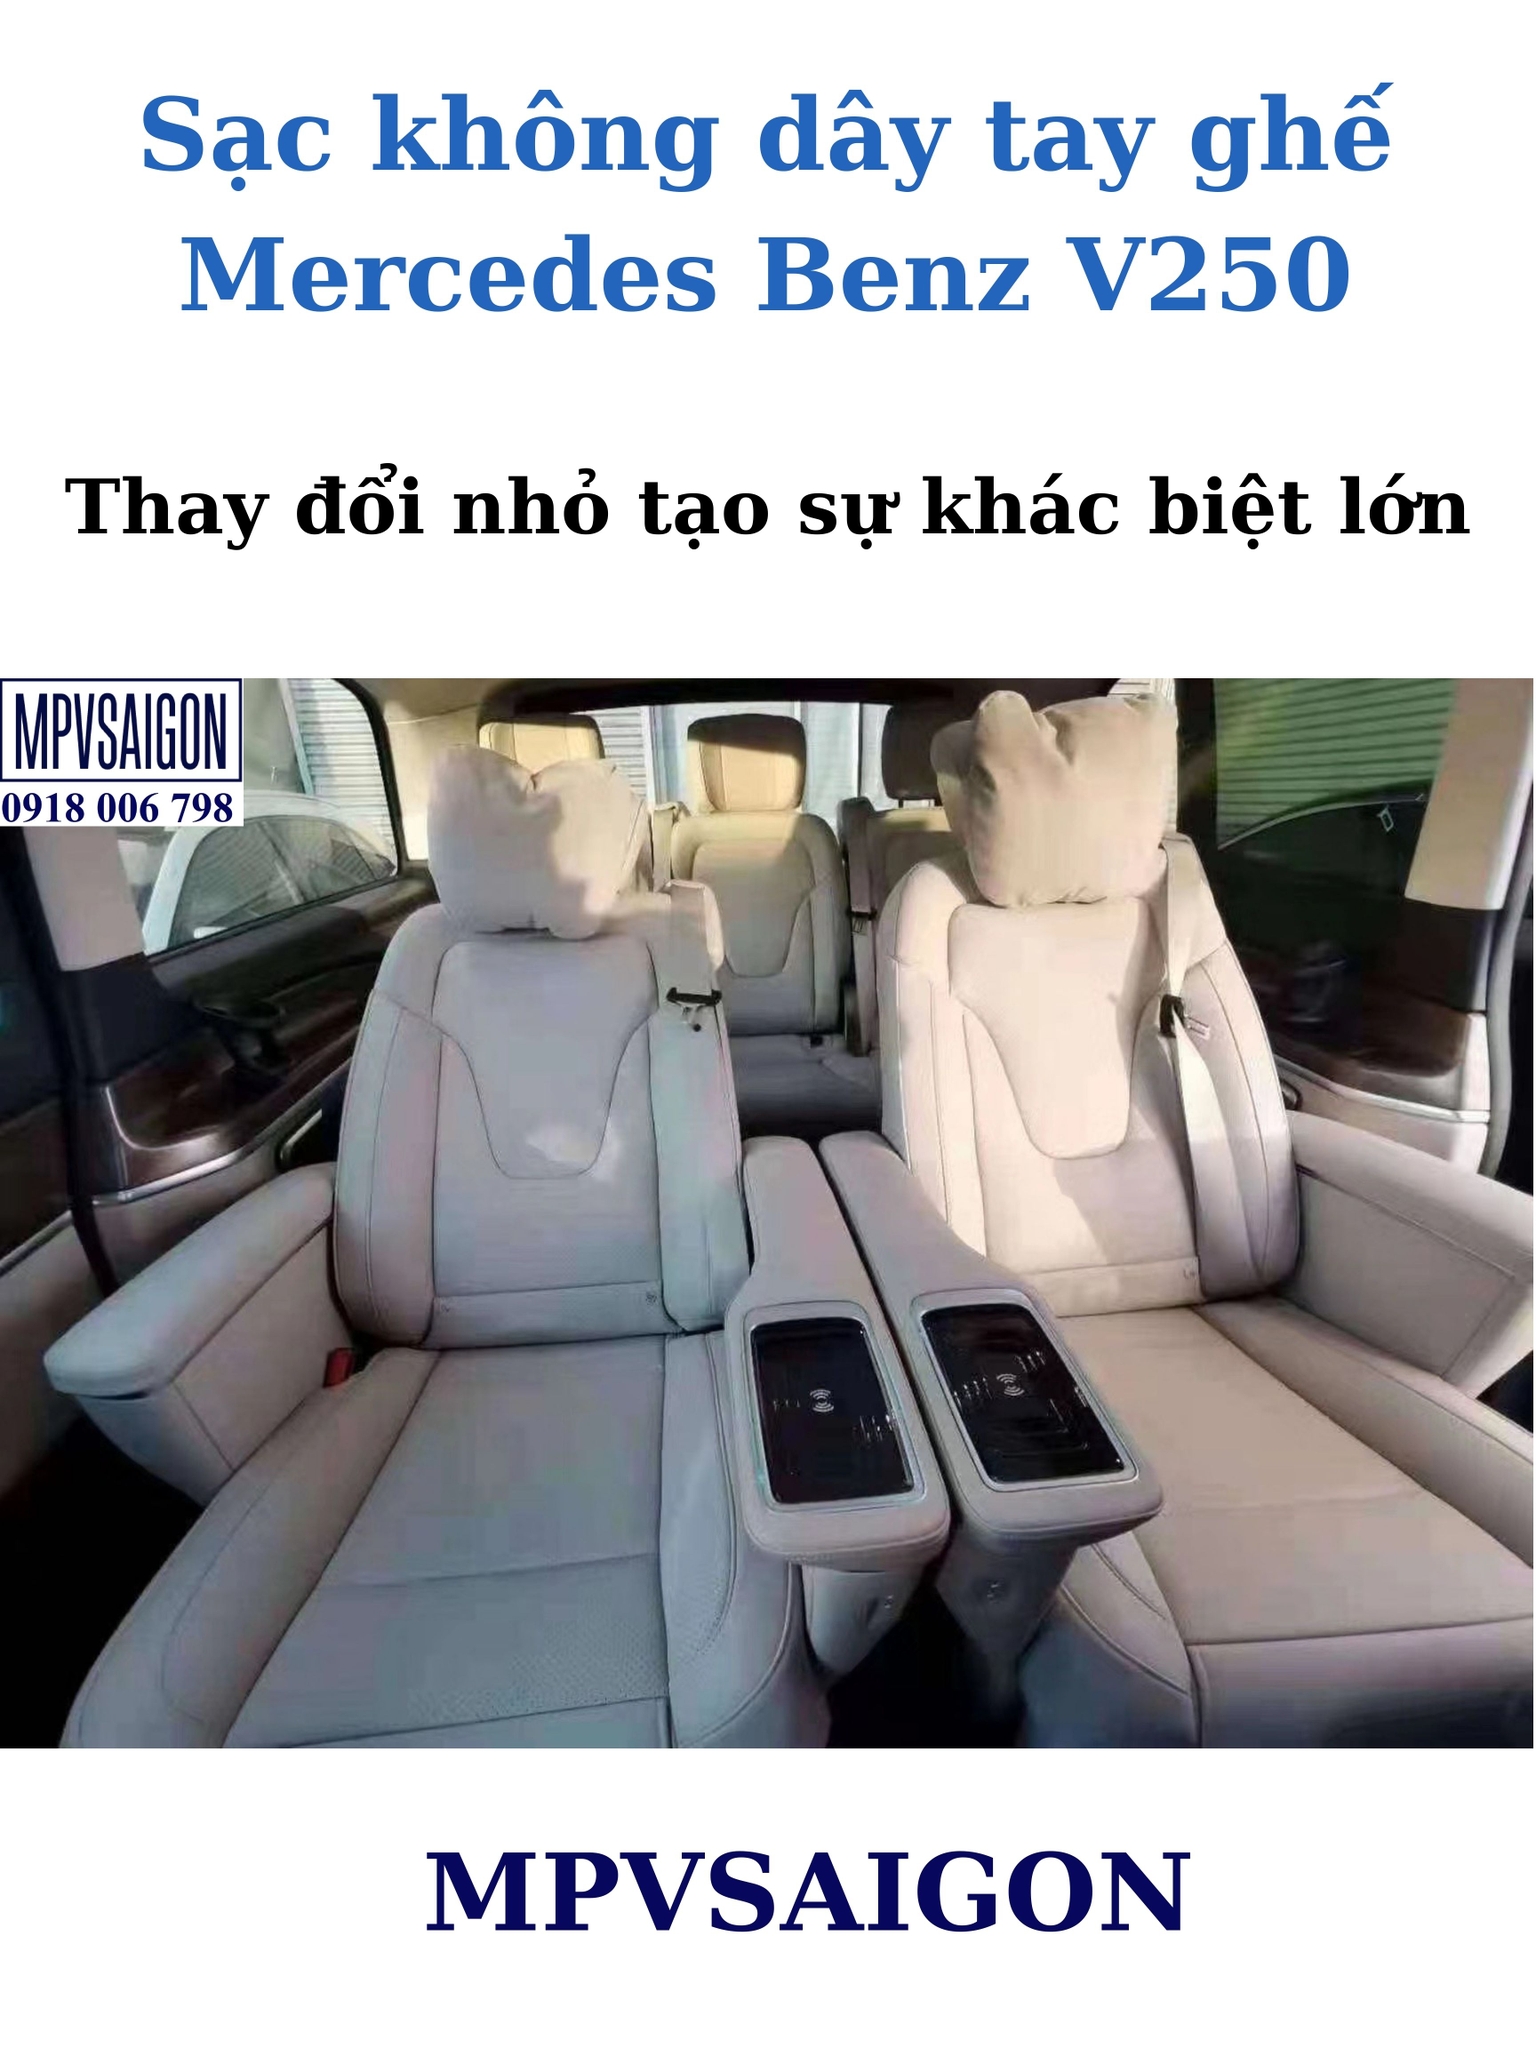 Sạc không dây tay ghế Mercedes Benz V250